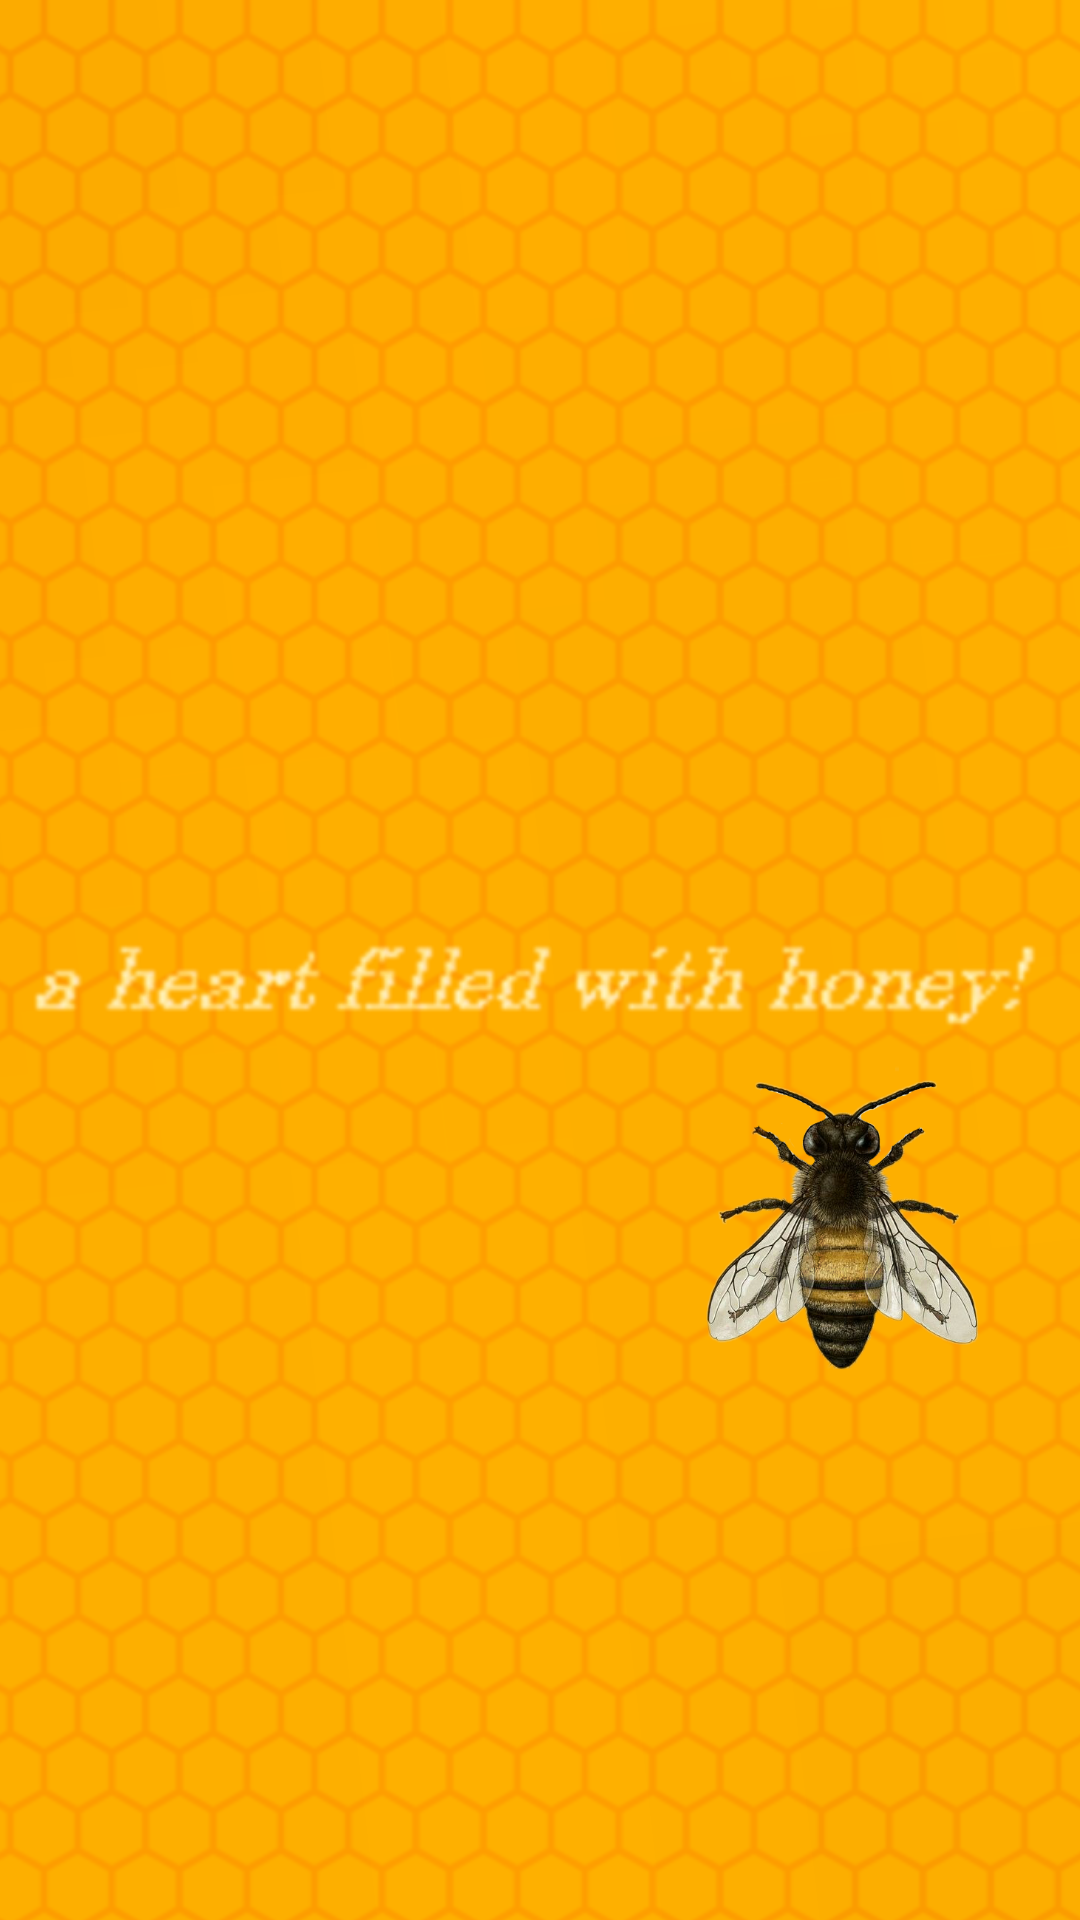 Image - Honeybee - HD Wallpaper 